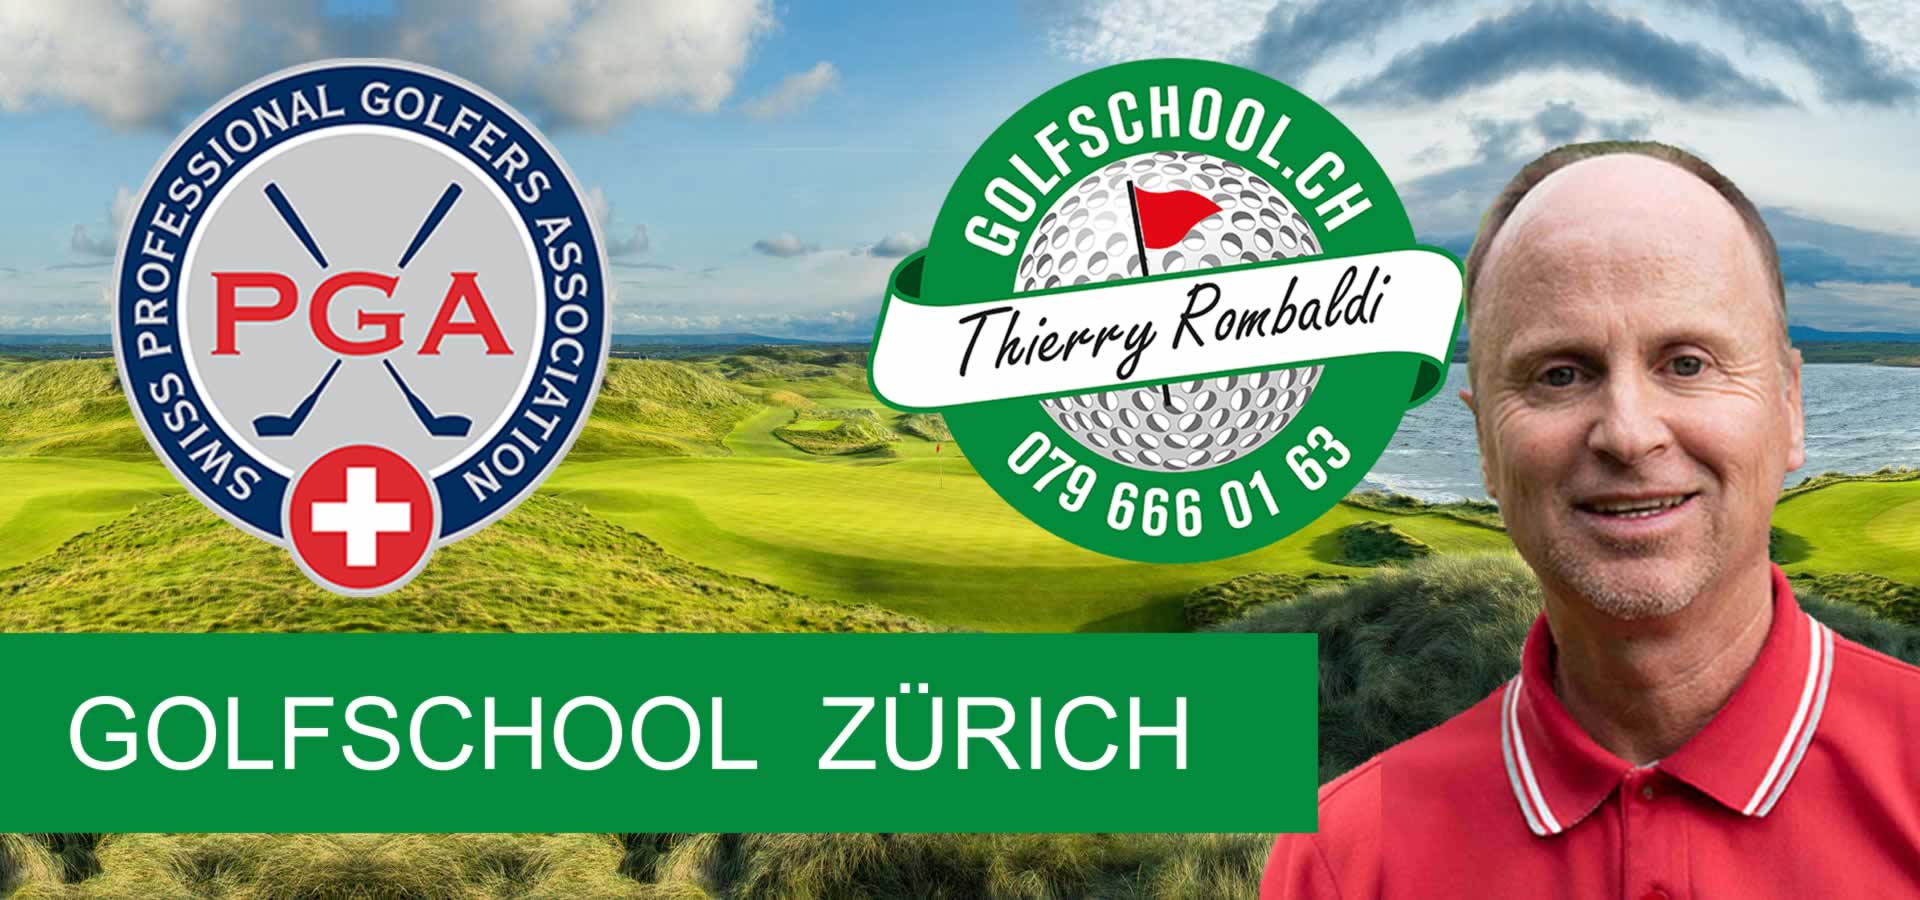 00-Golfunterricht-Zuerich-Golflehrer-Pro-Golfschool-Thierry-Rombaldi